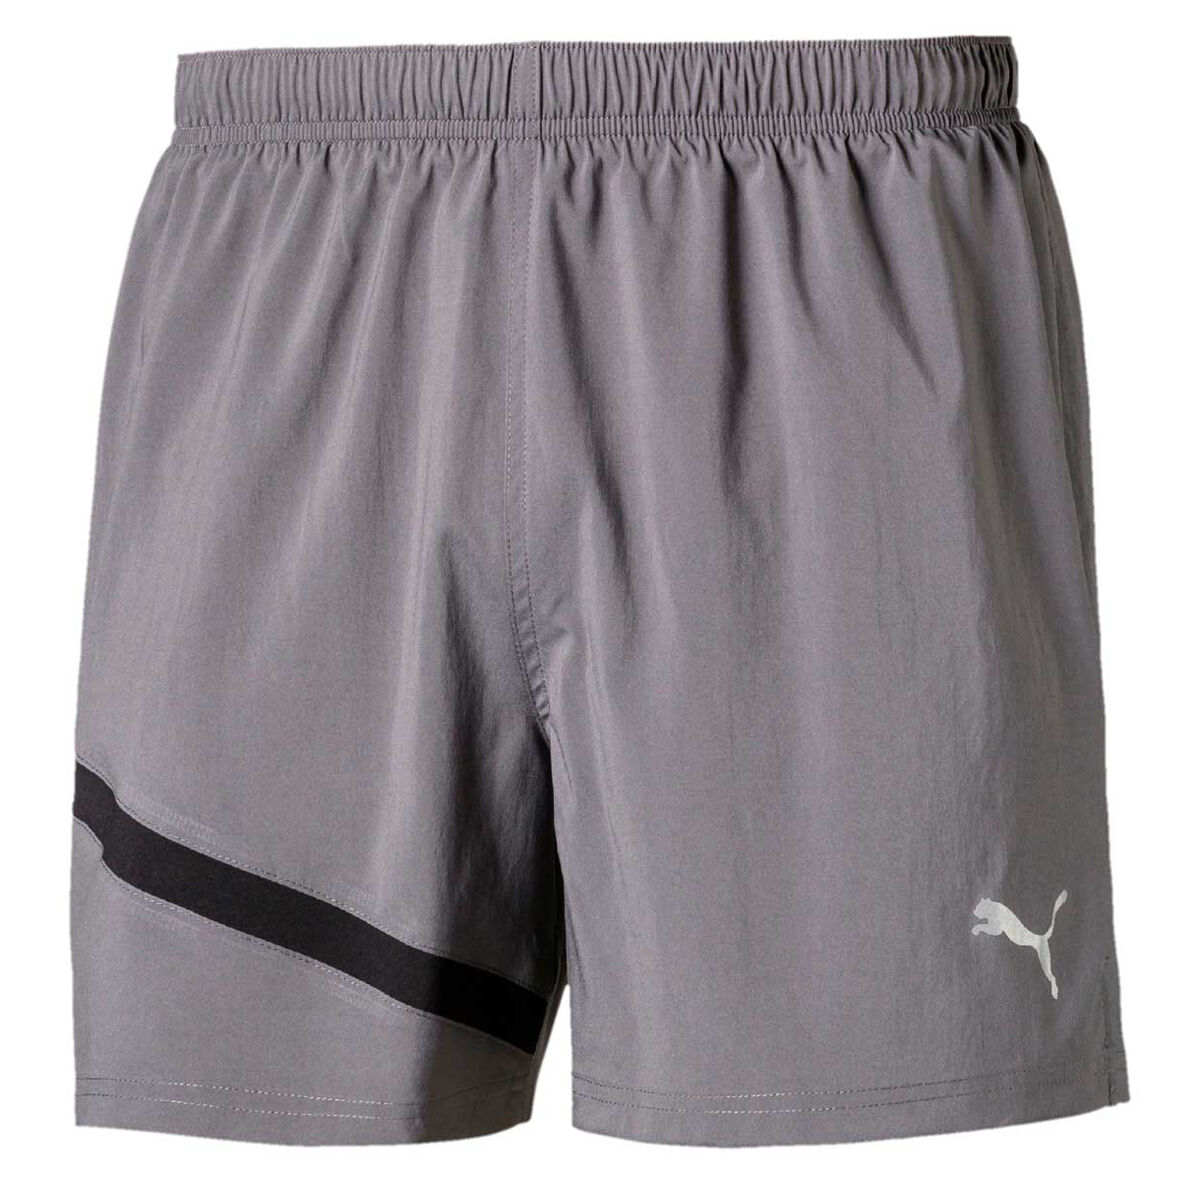 puma 5 inch running shorts